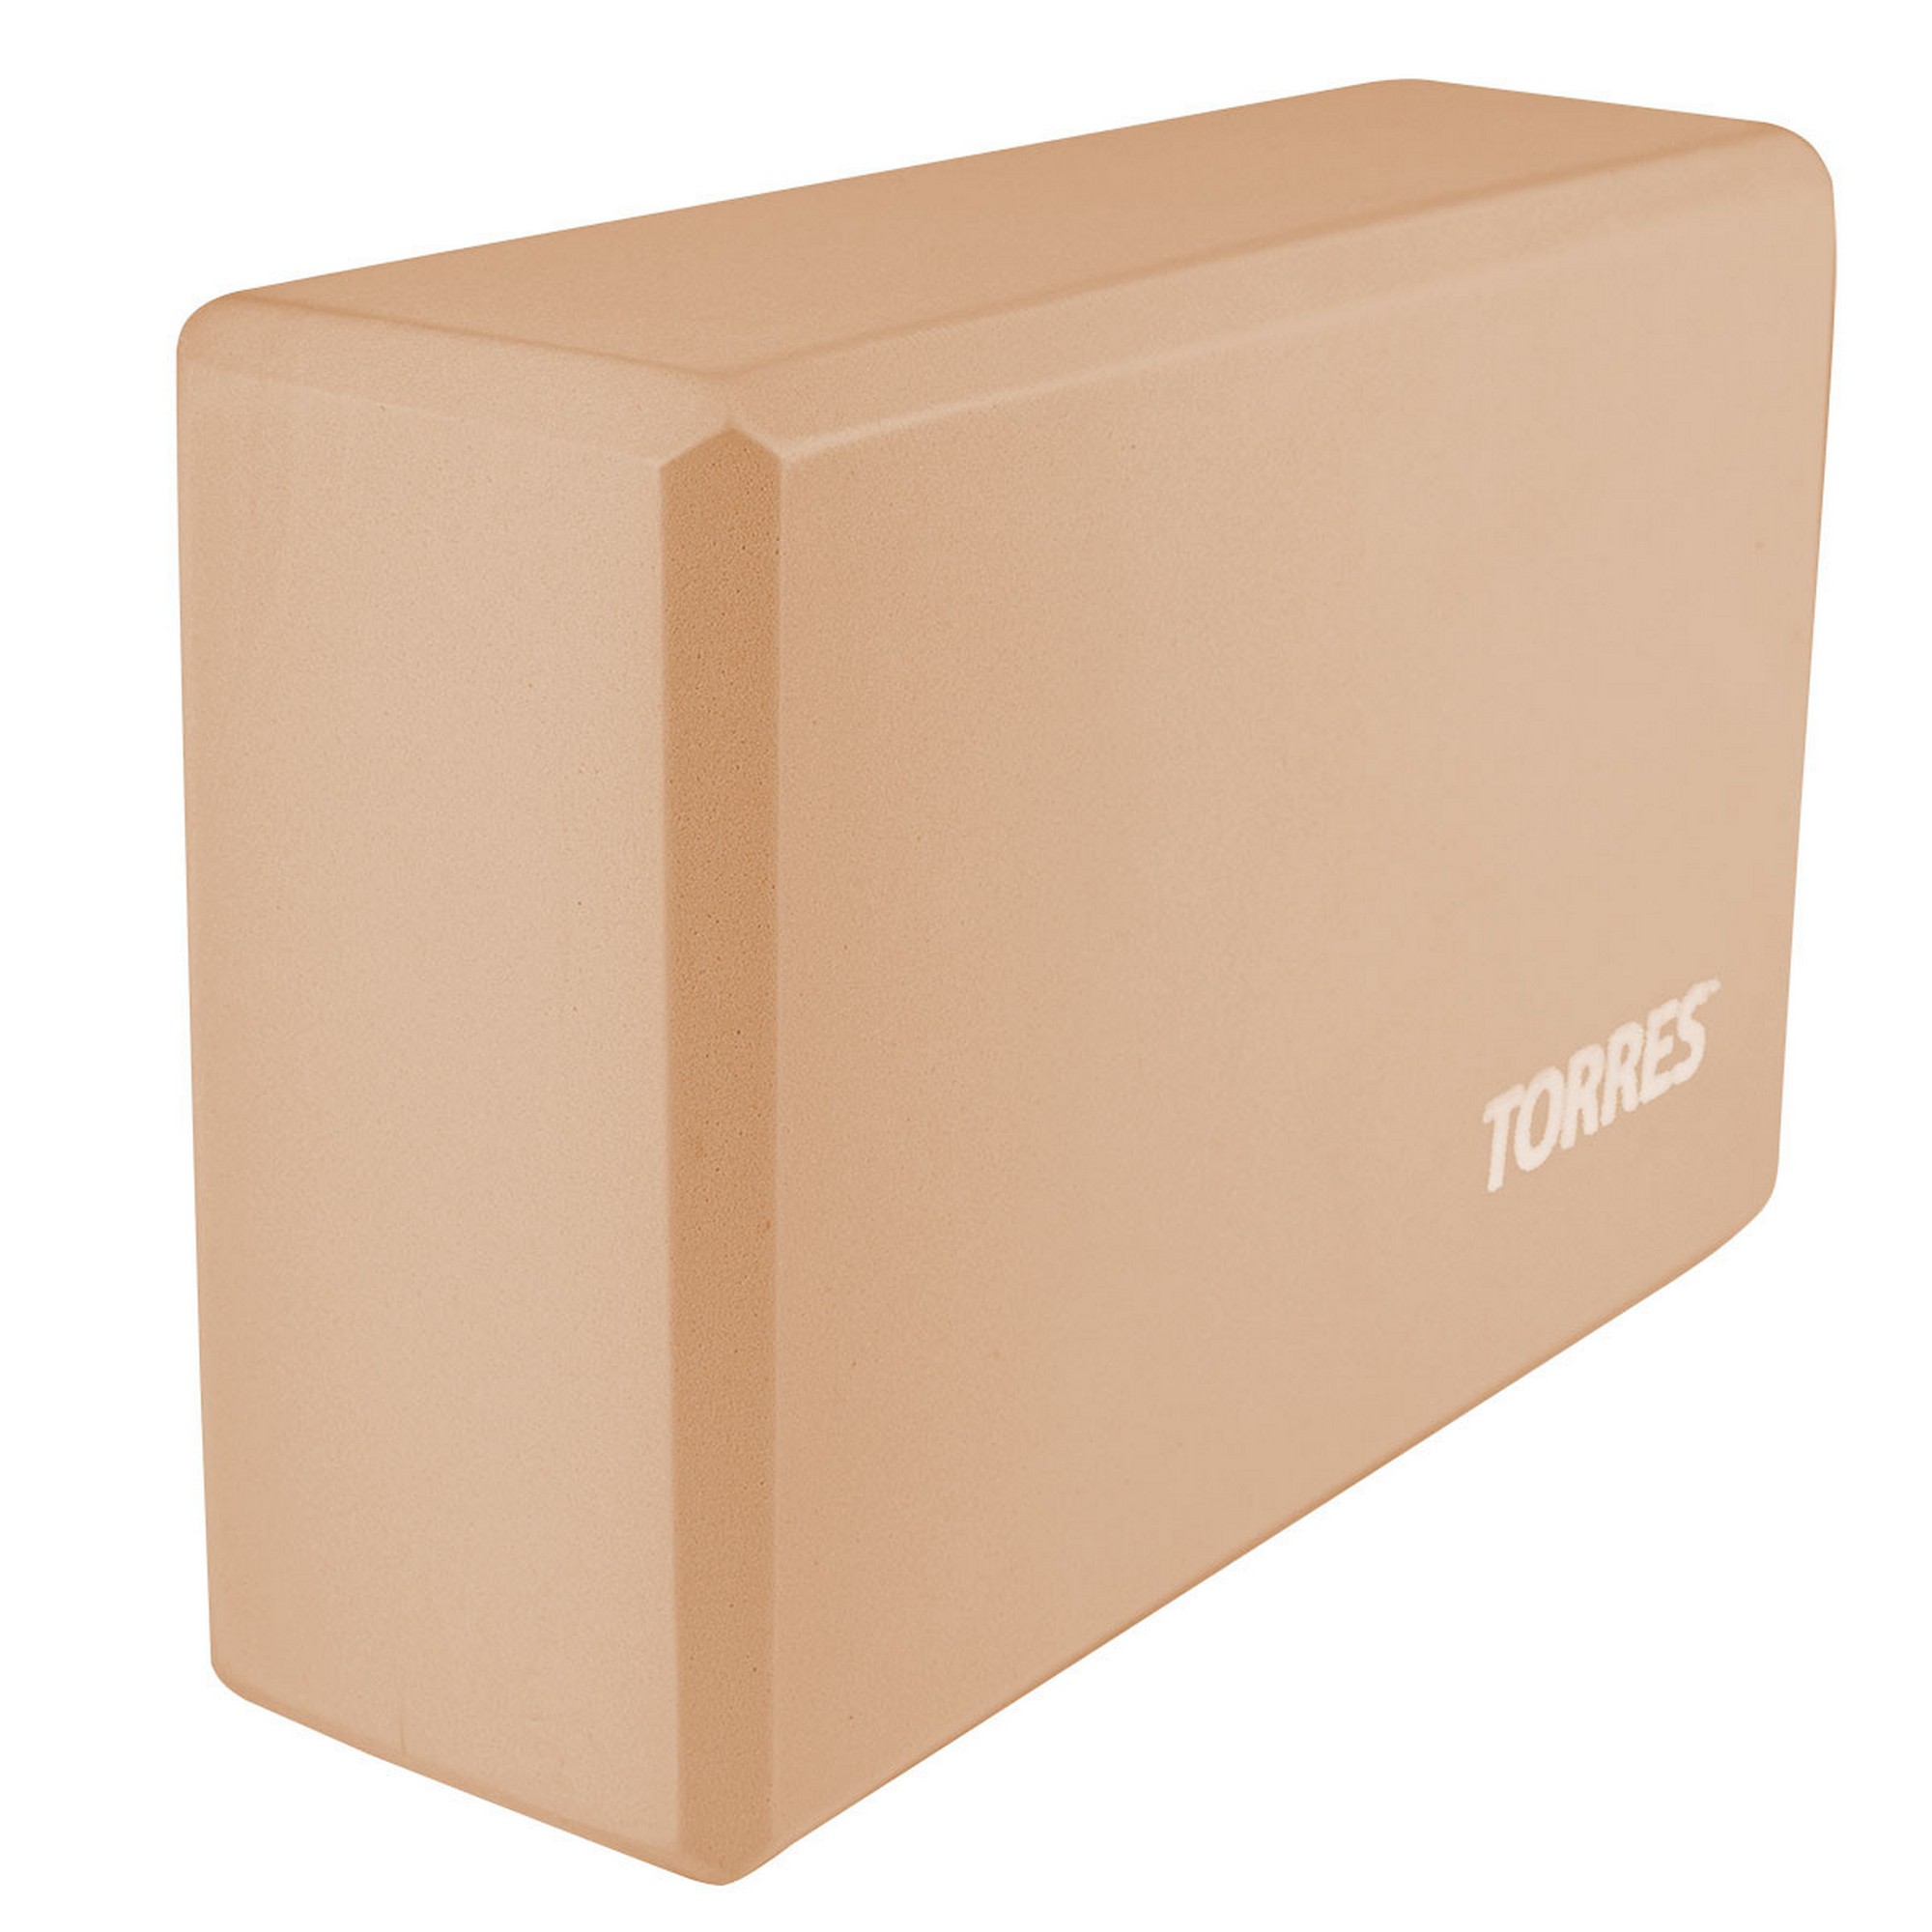 Блок для йоги Torres материал ЭВА, 8x15x23 см YL8005P пудровый 2000_2000